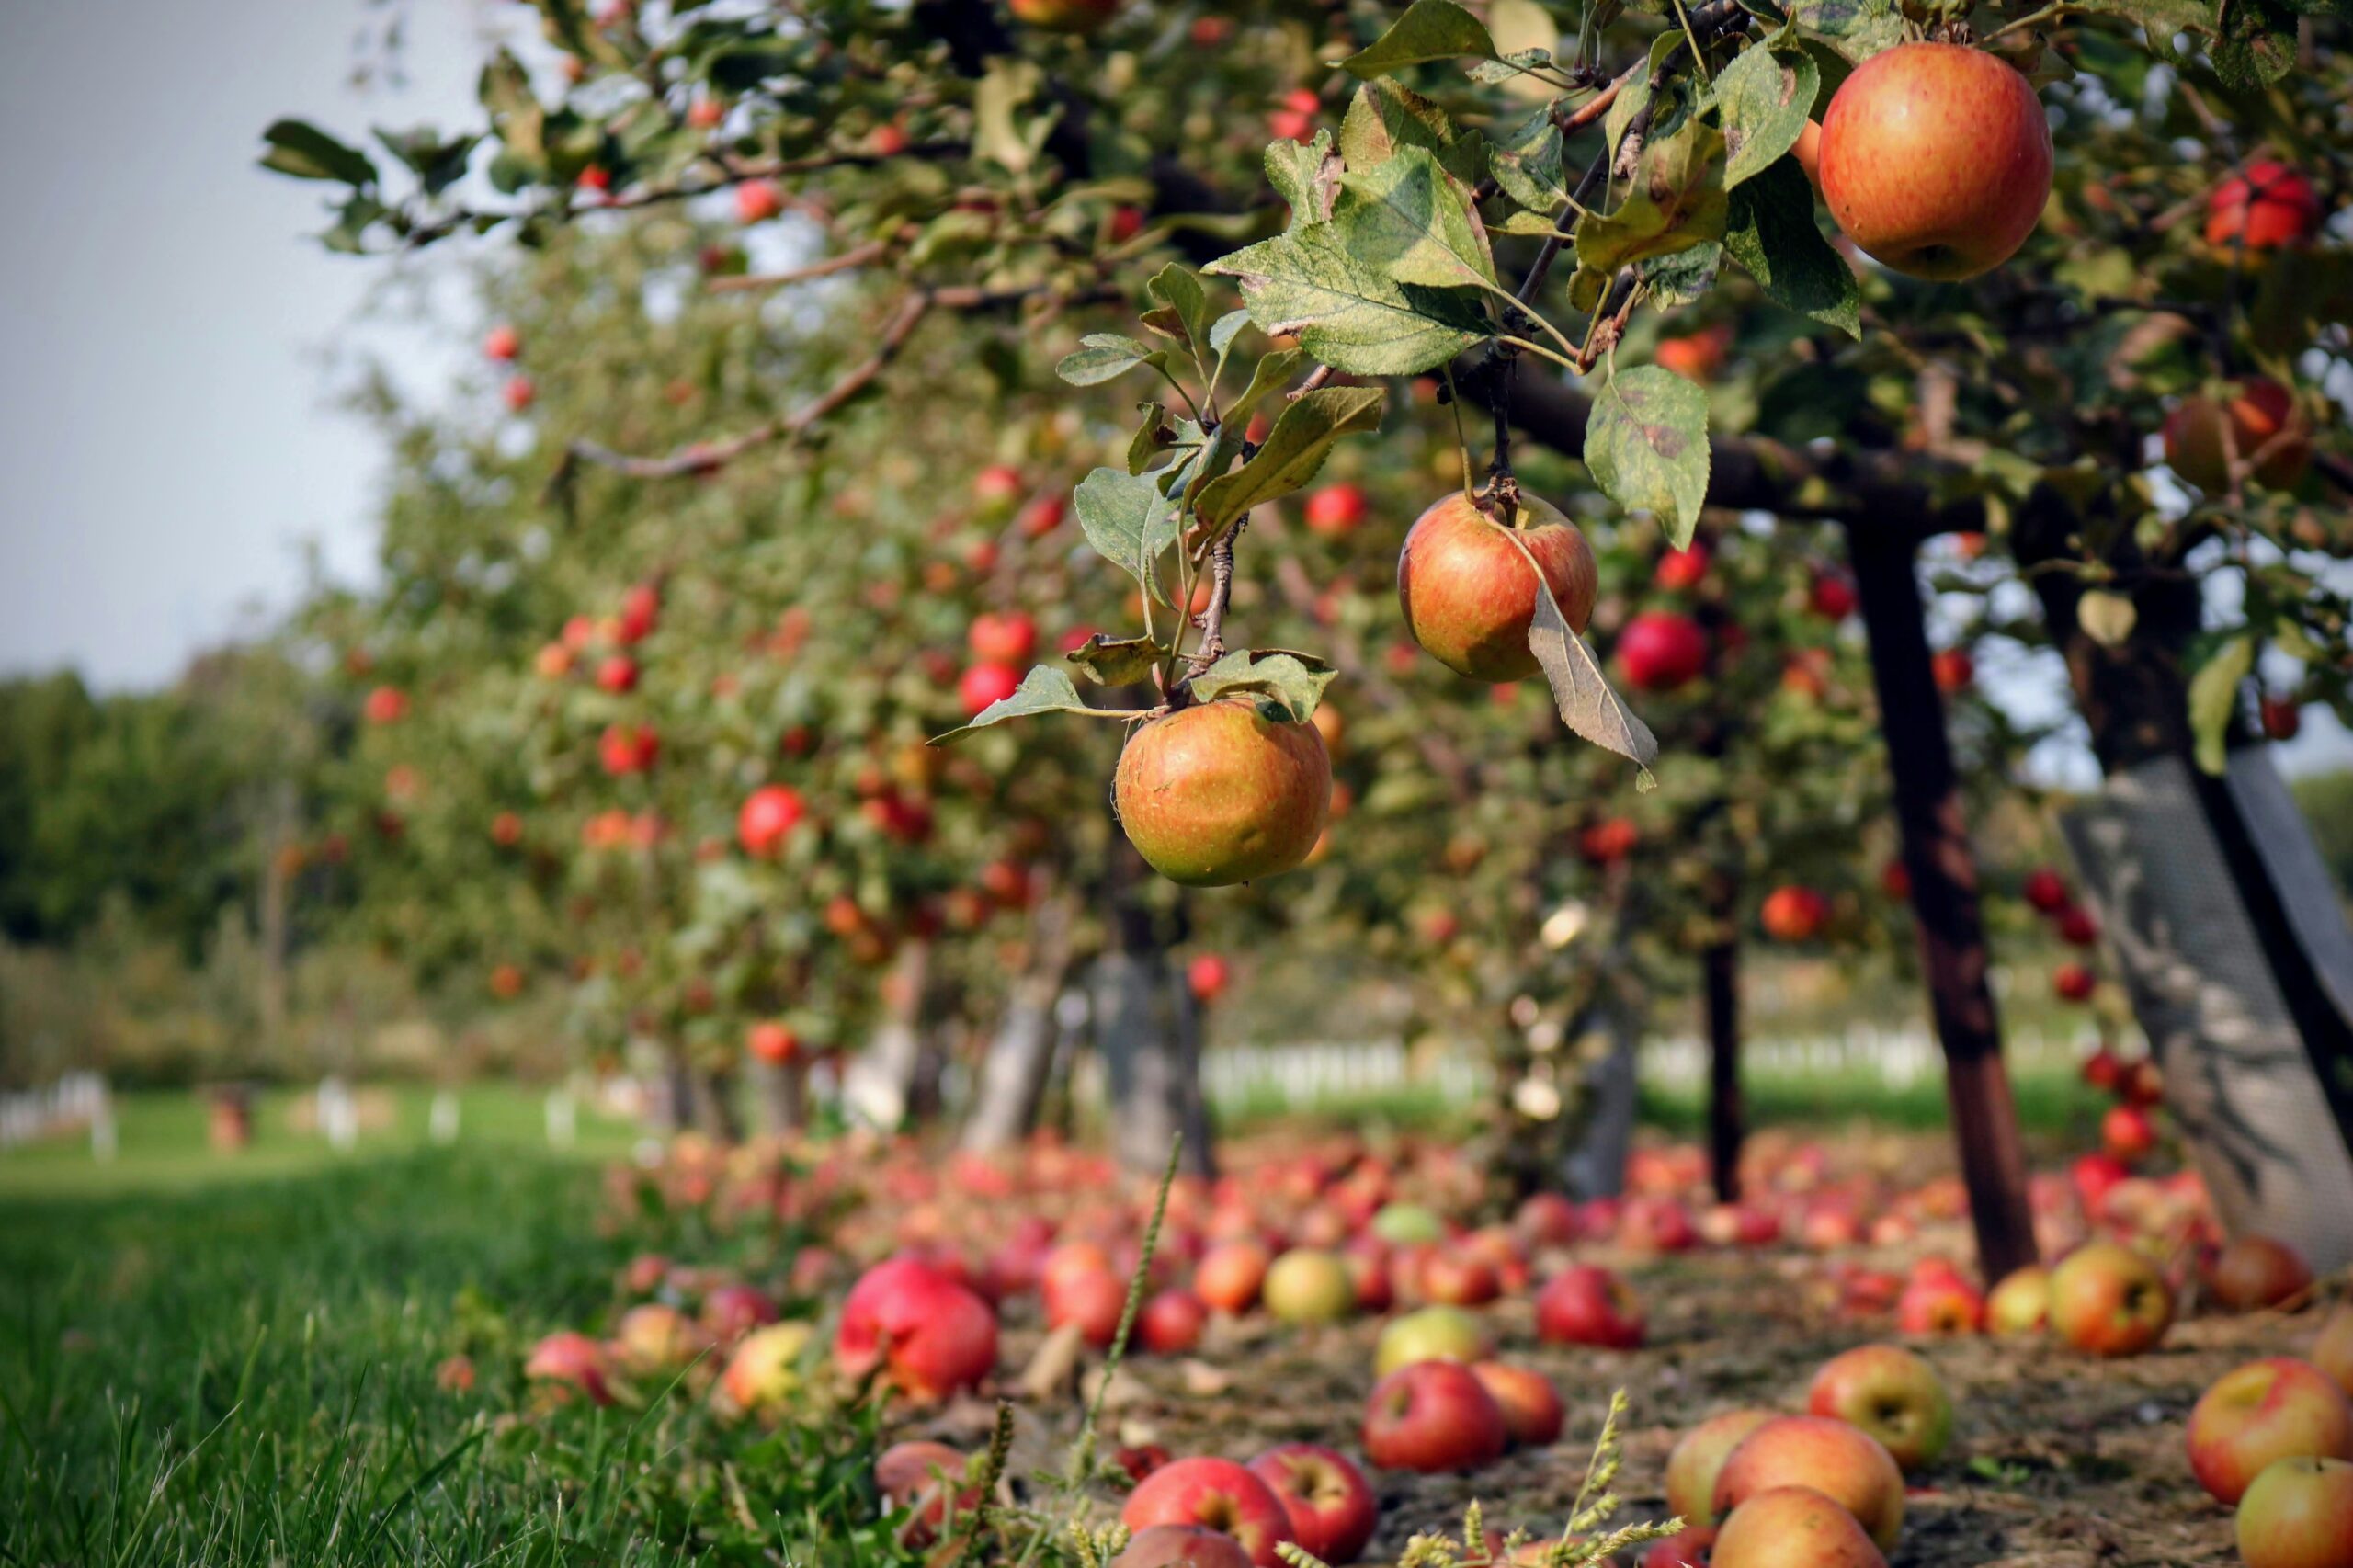 Picknick im Alten Land: Viele Apfelbäume auf einer Wiese